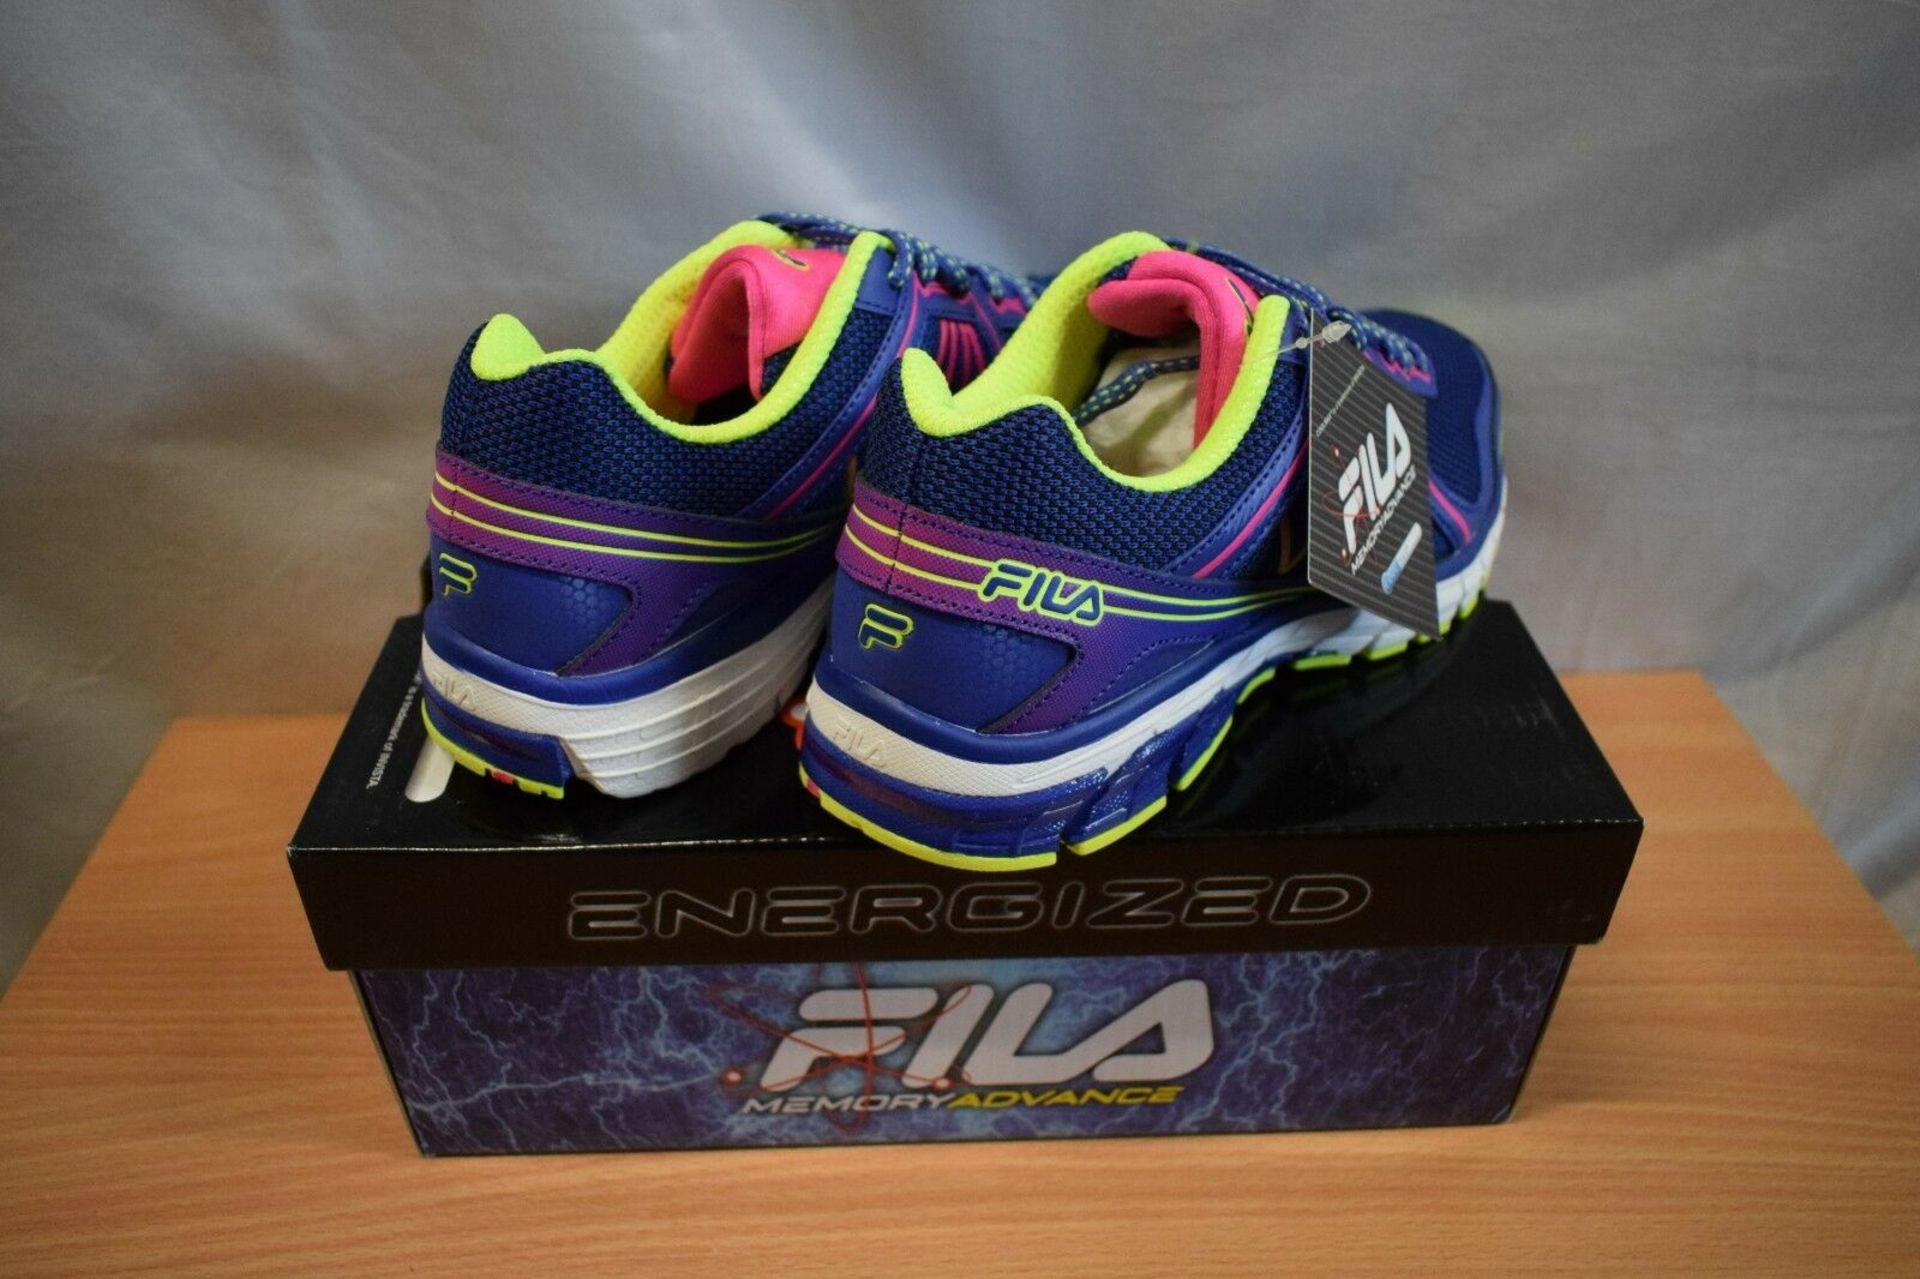 Fila Steelstrike 2 Energized Running Shoe Uk 4 (New With Box) [Ref: 45615771-I-001] - Image 2 of 2